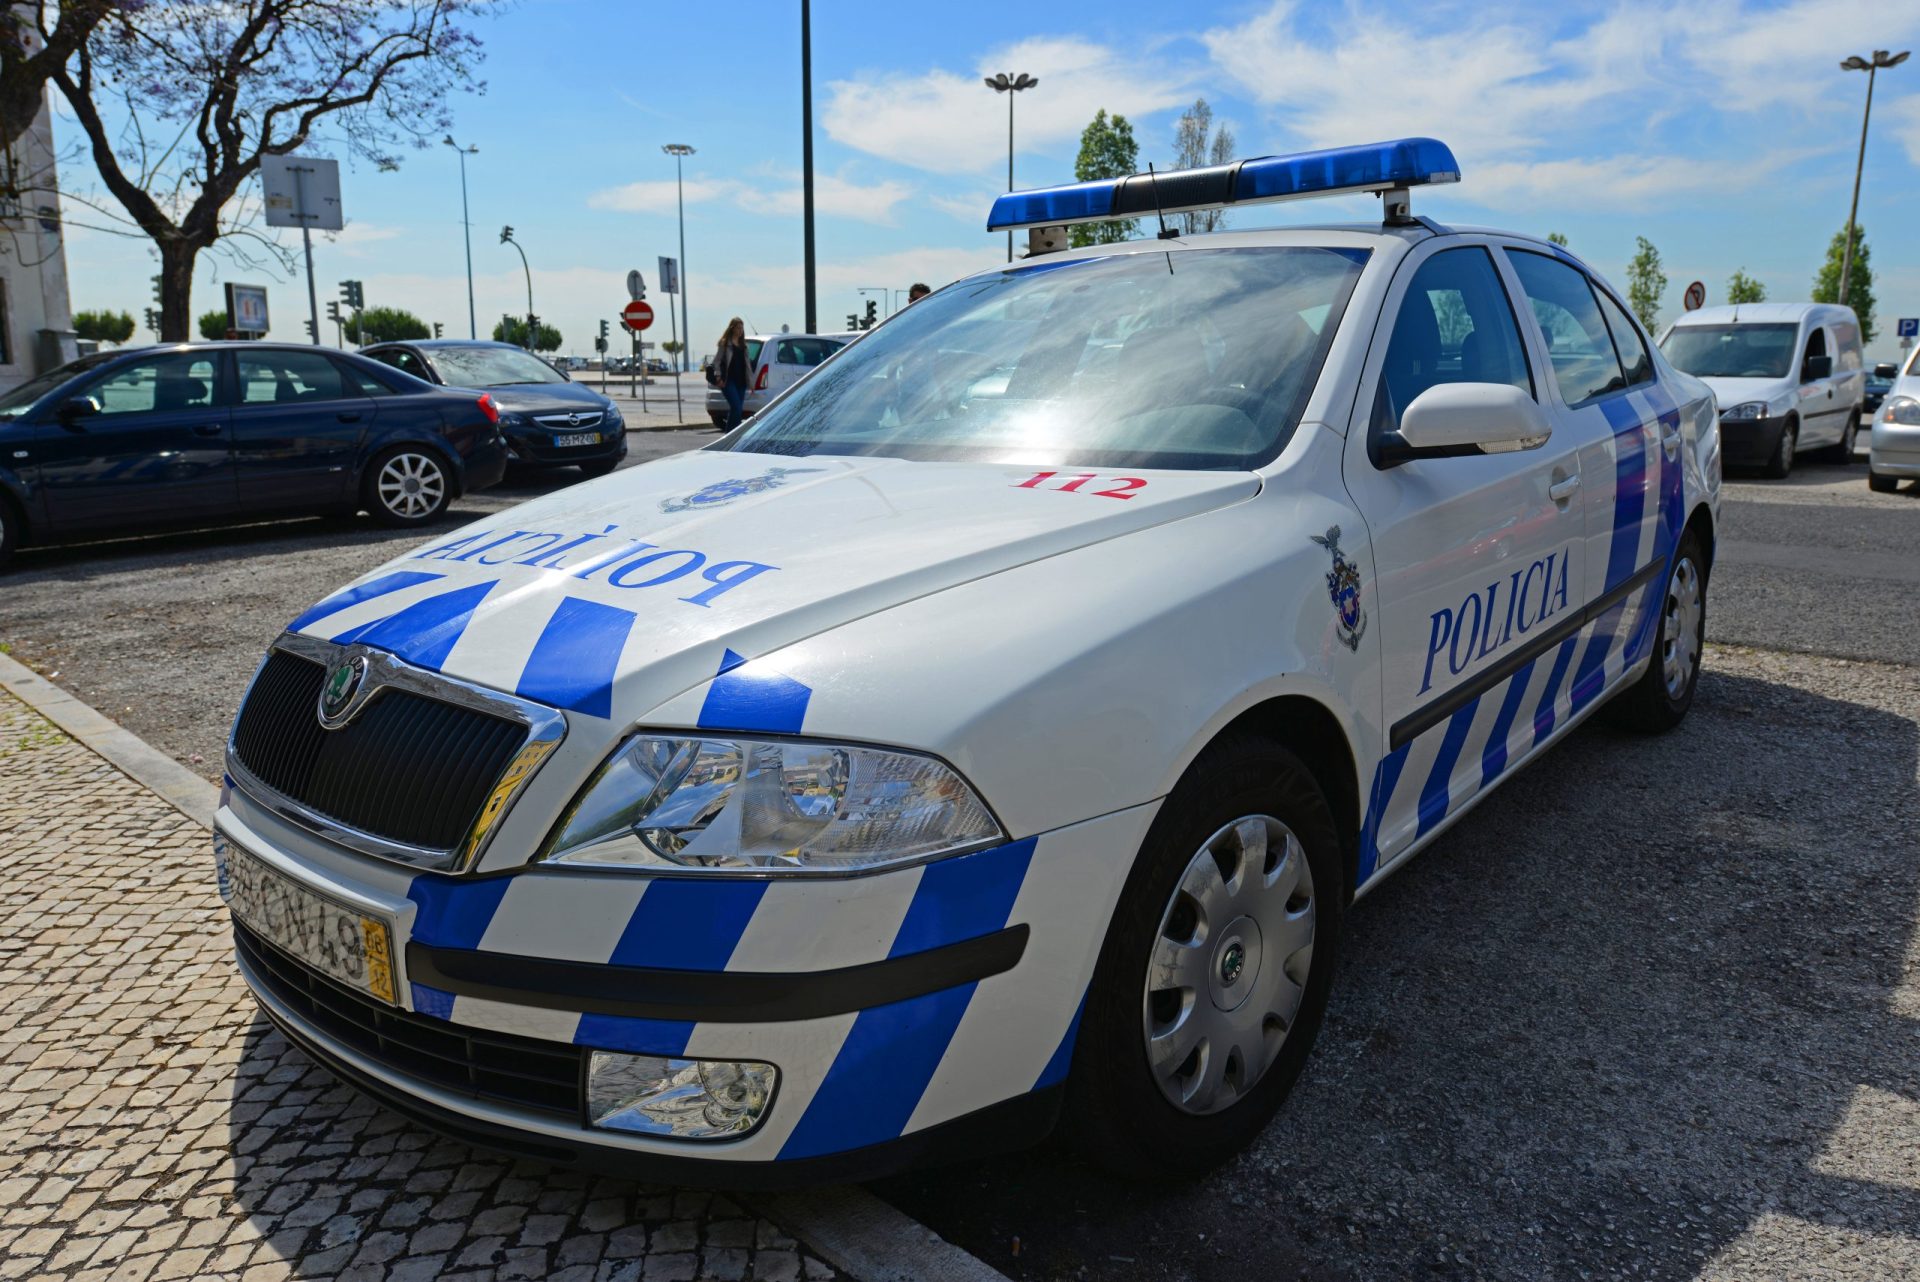 Detidos dois homens por clonagem de cartões multibanco em Lisboa